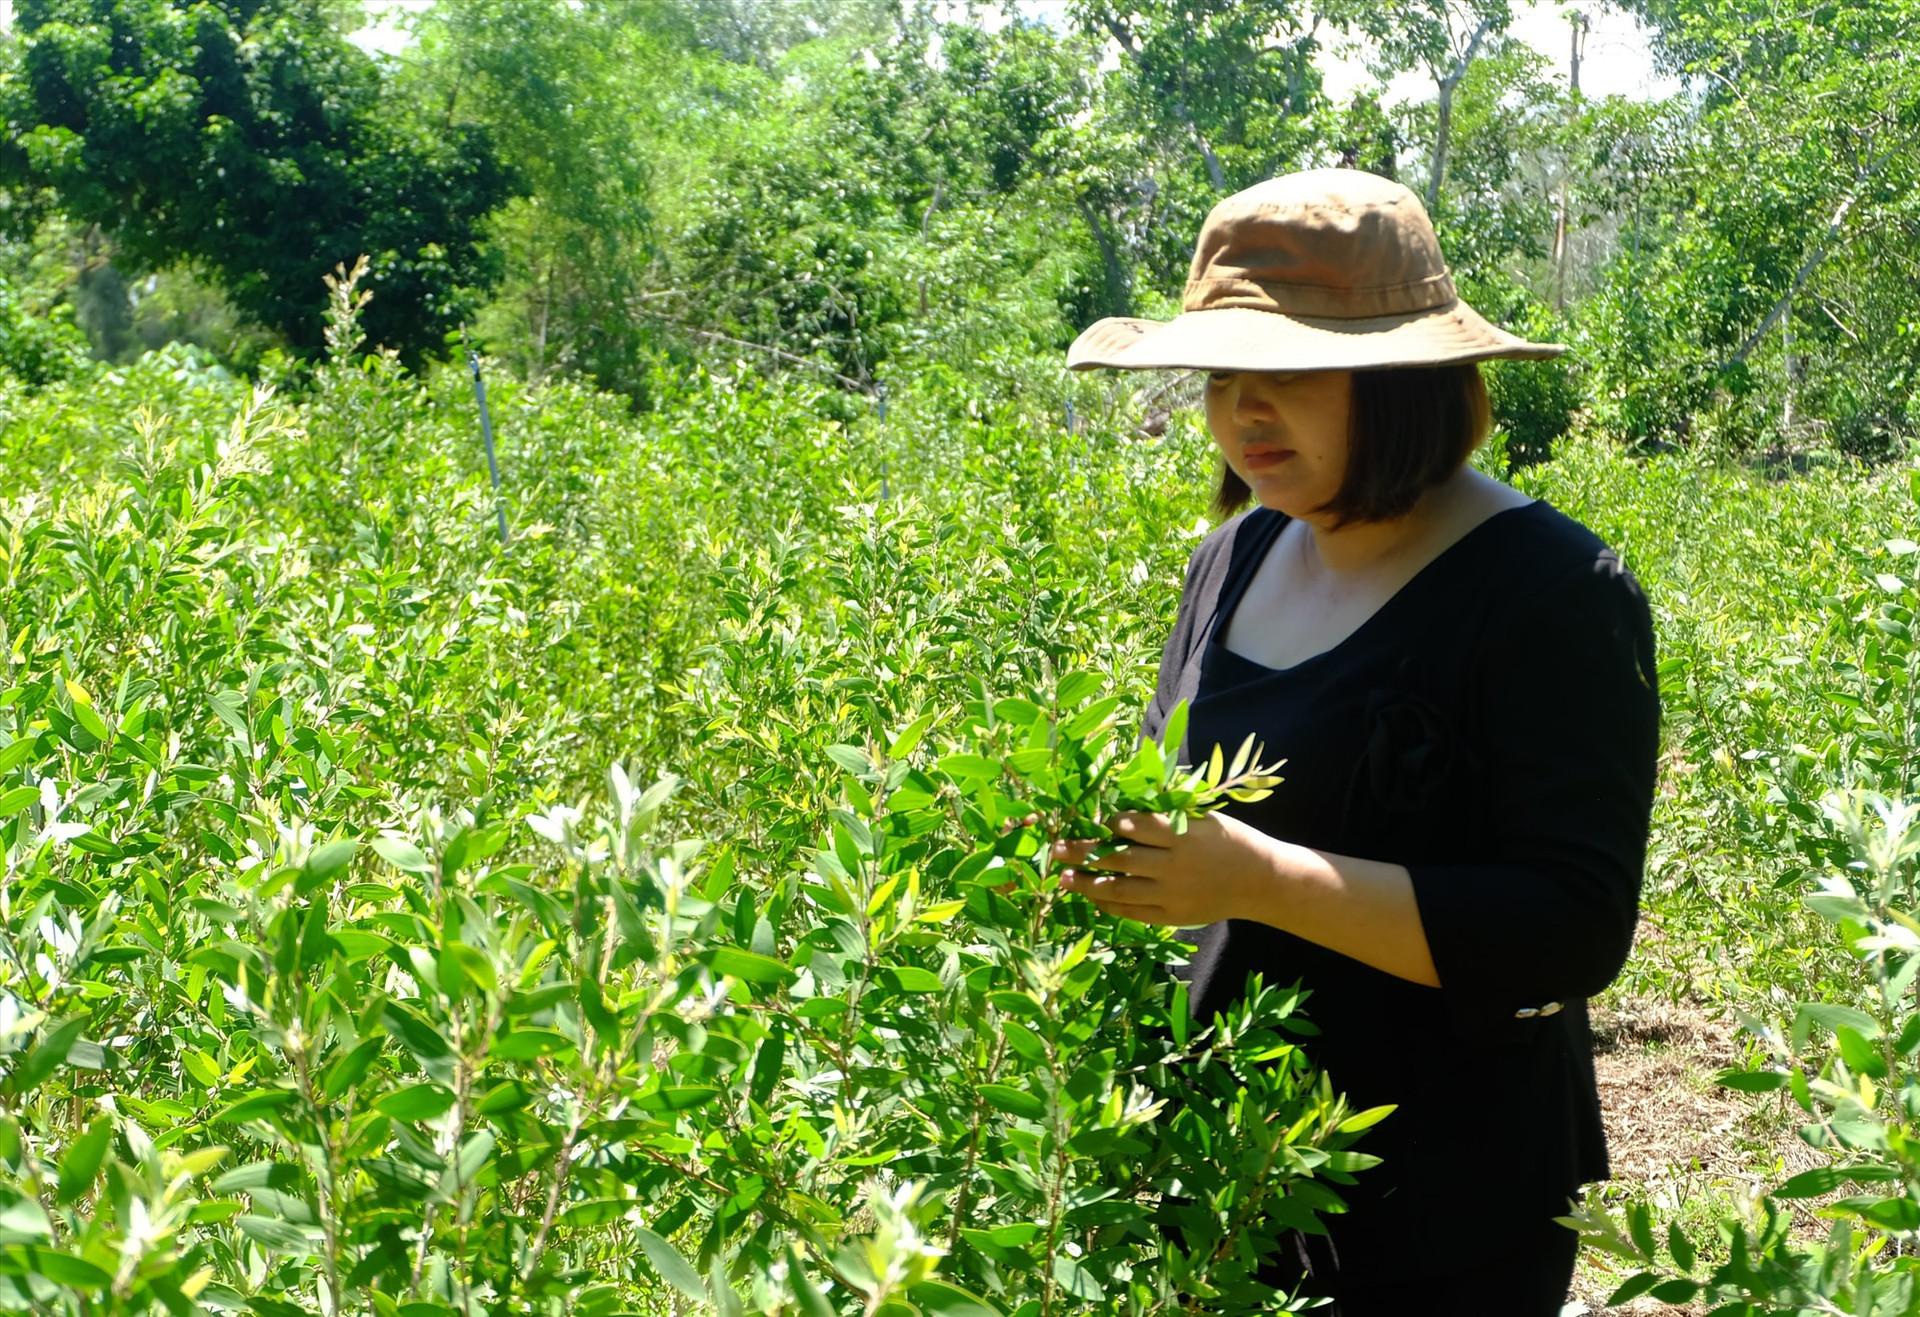 Chị Bùi Thị Nguyệt (thôn Tây Giang, xã Bình Sa, Thăng Bình) đã trồng được nguồn nguyên liệu tại chỗ là cây tràm gió để sản xuất dầu tràm. Ảnh: G.B